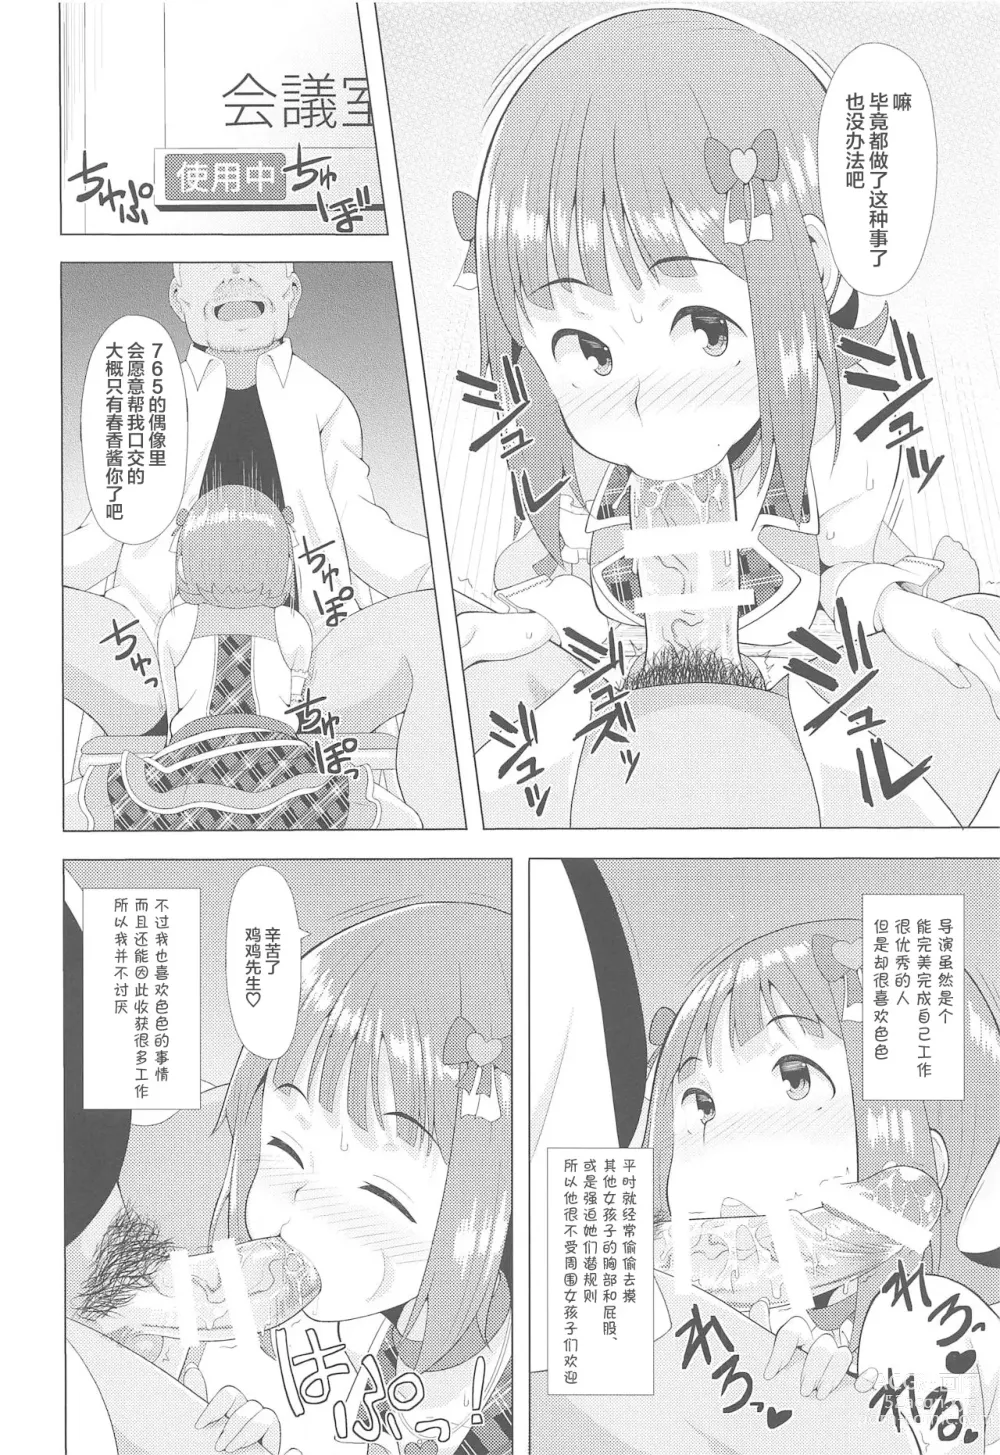 Page 5 of doujinshi Ninki Idol no Renai Jijou ~Amami Haruka no Baai~